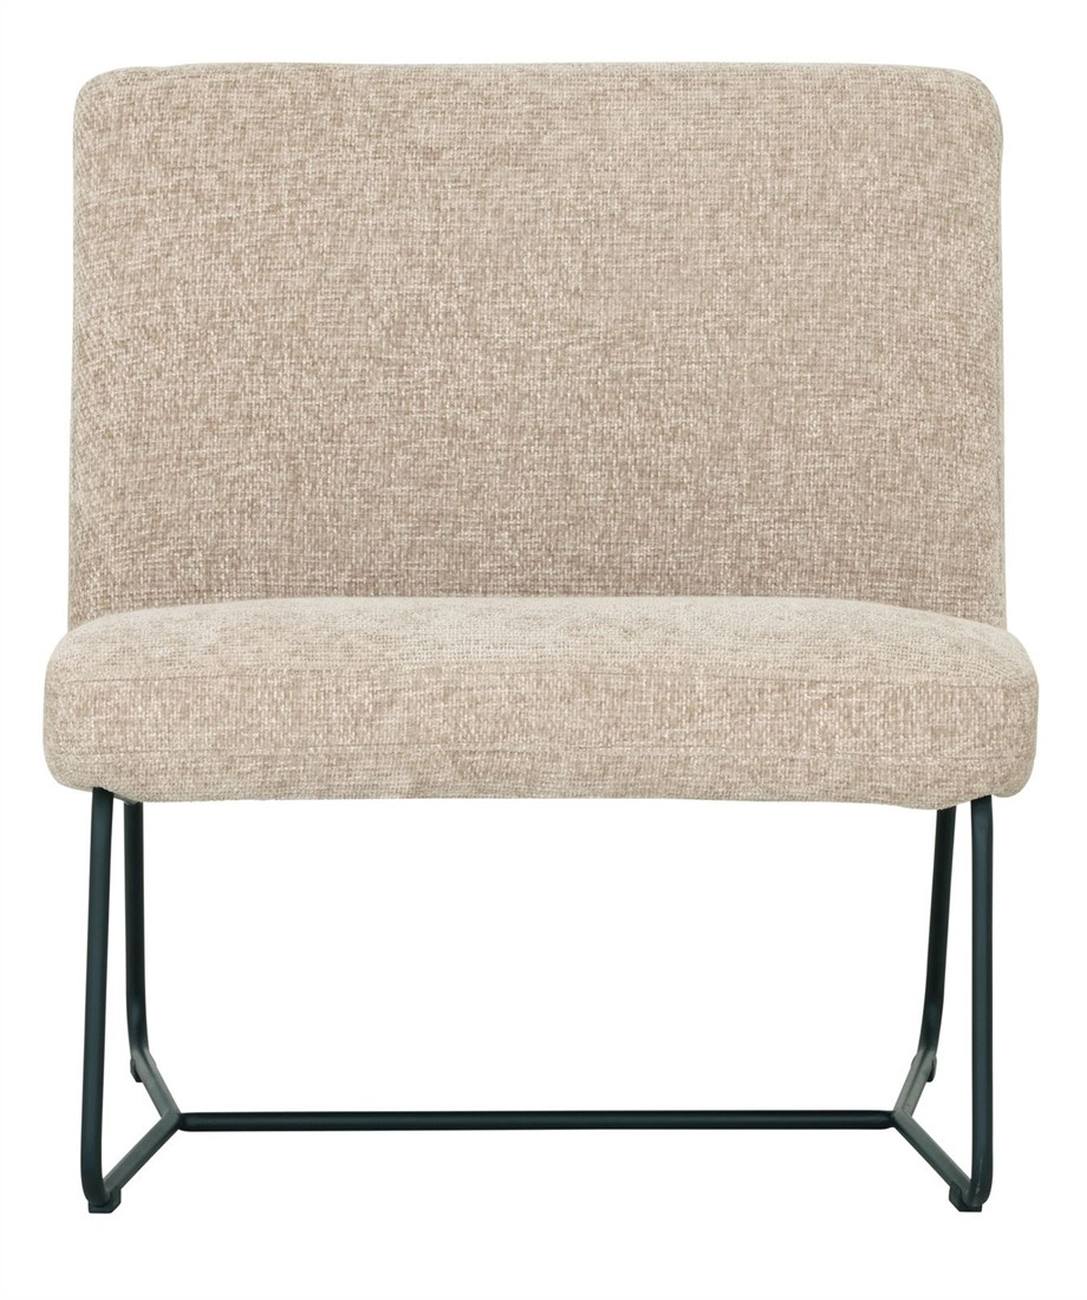 Der Sessel Zola überzeugt mit seinem modernen Design. Gefertigt wurde er aus Stoff, welcher einen Sand Farbton besitzt. Das Gestell ist aus Metall und hat eine schwarze Farbe. Der Sessel besitzt eine Größe von 80x78x80 cm.